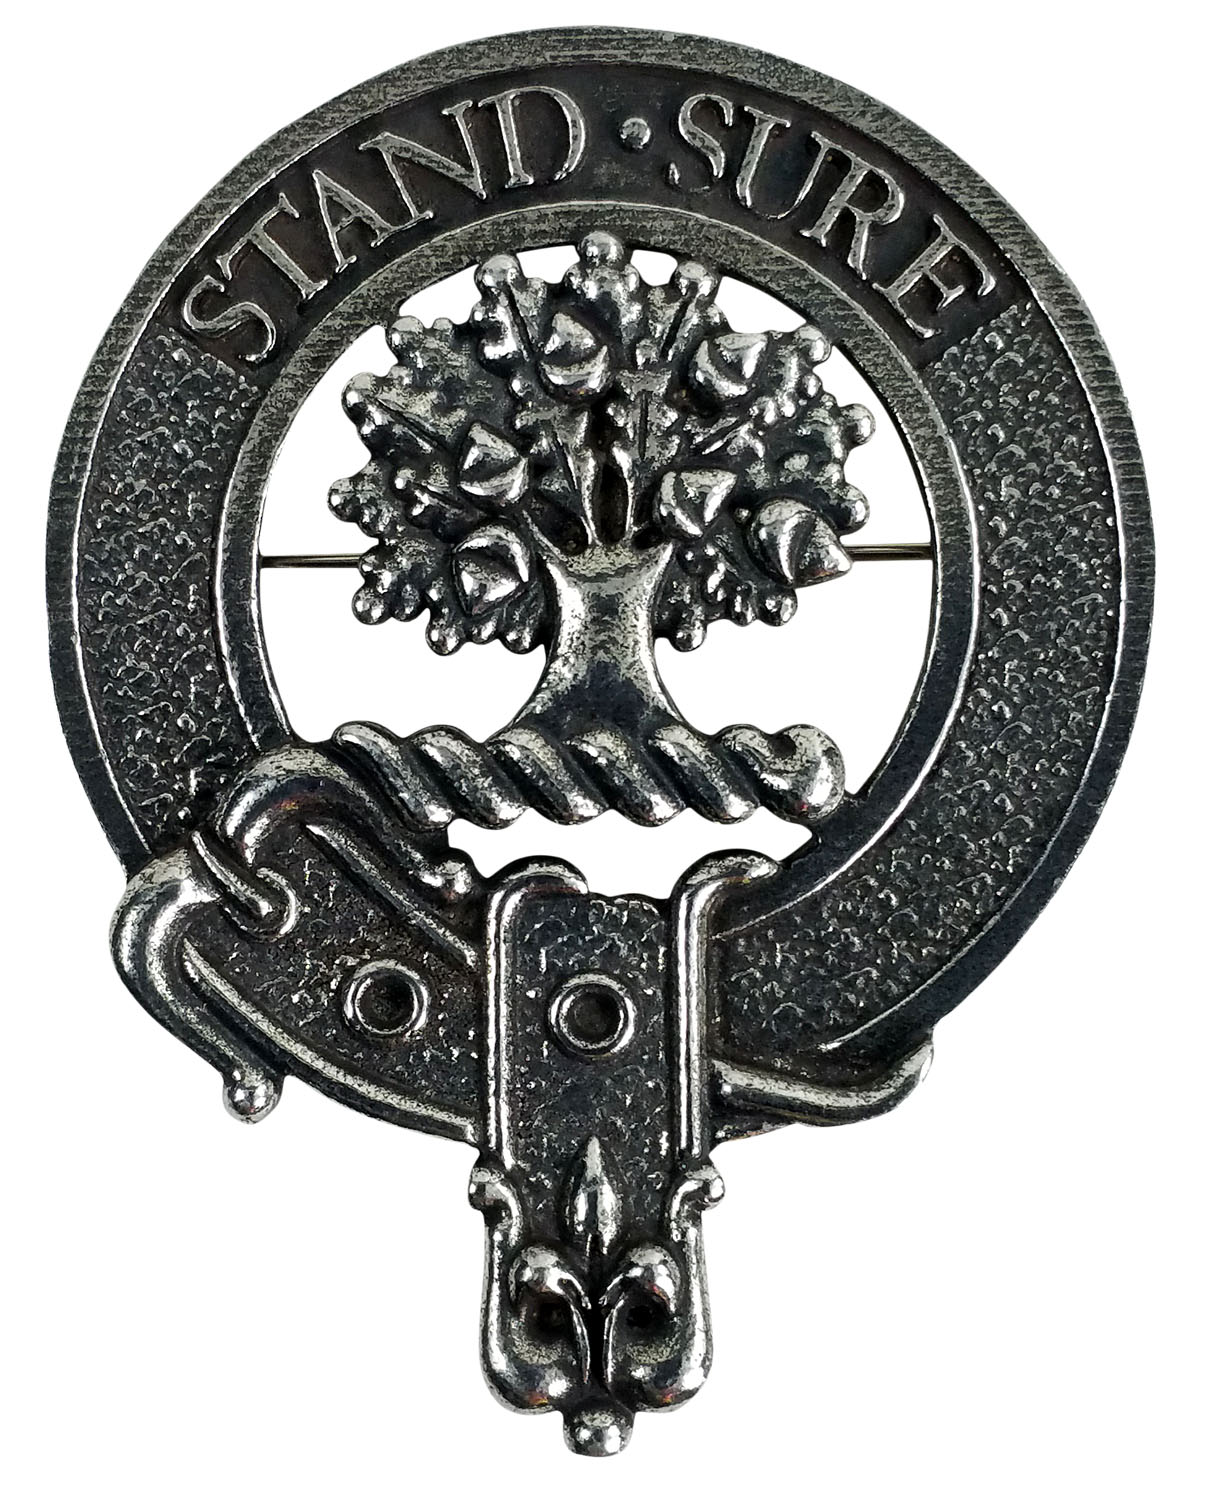 Anderson Clan Crest Cap Badge Brooch